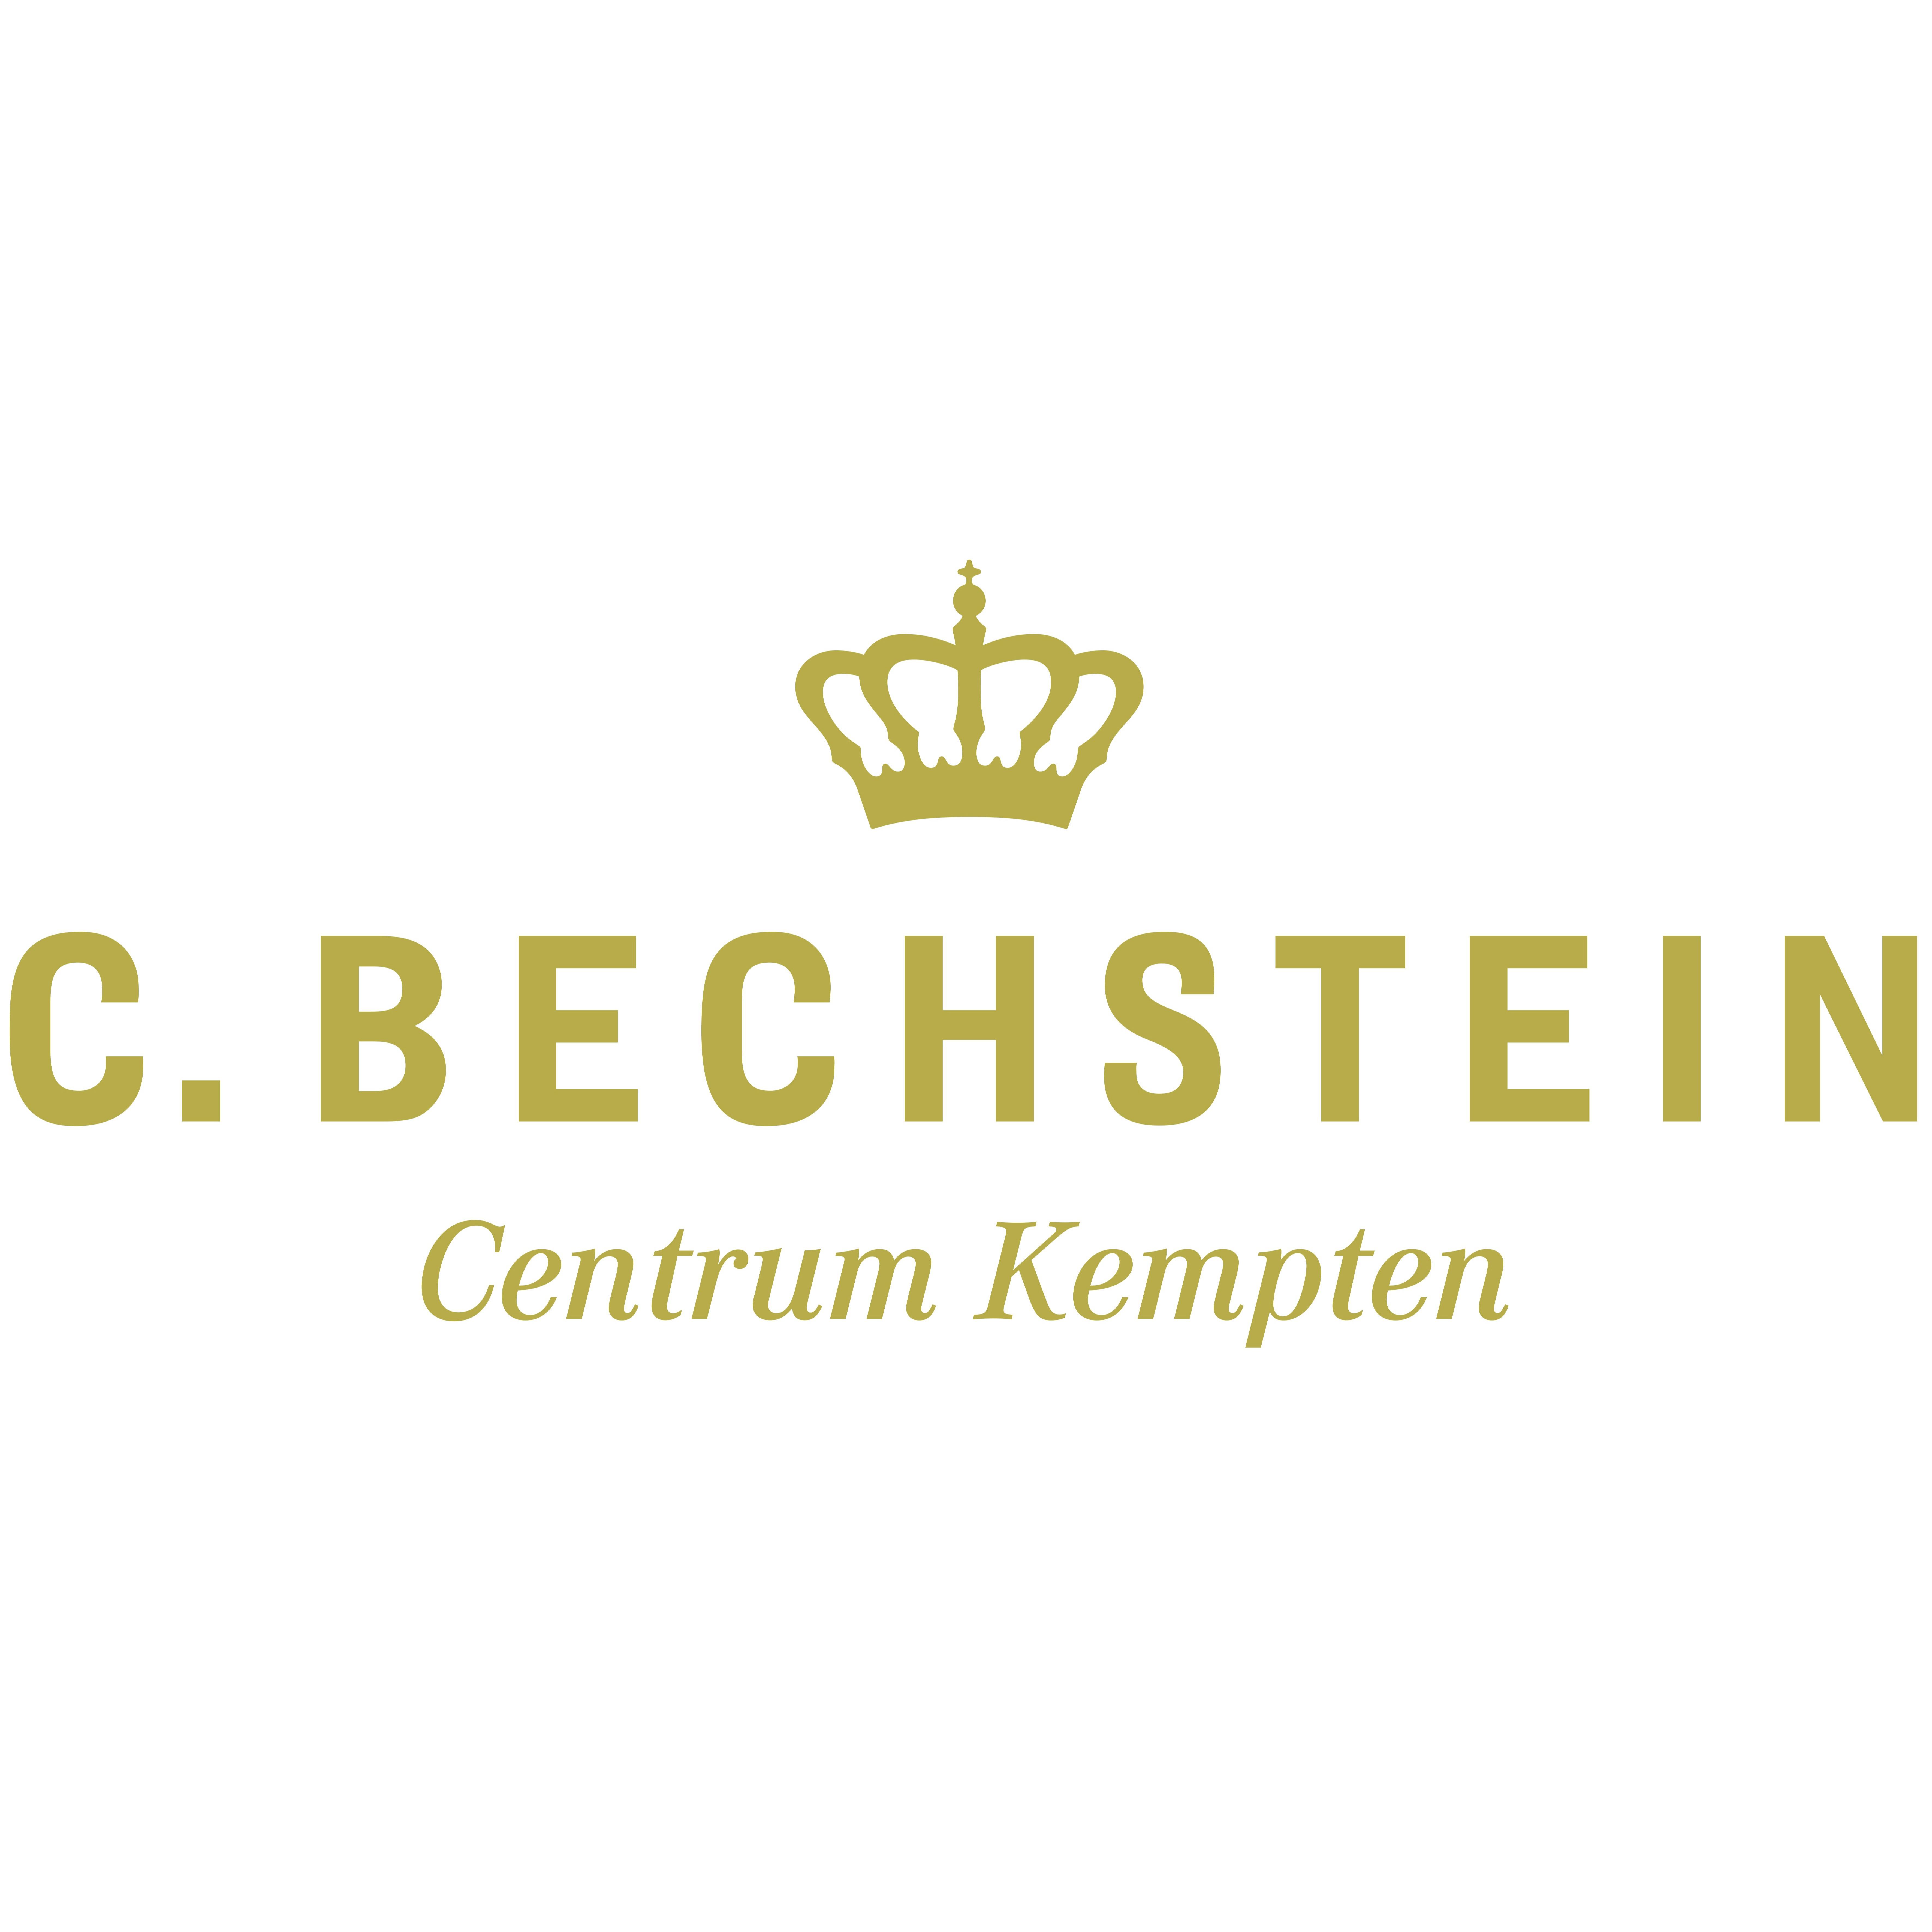 C. Bechstein Centrum Kempten GmbH  